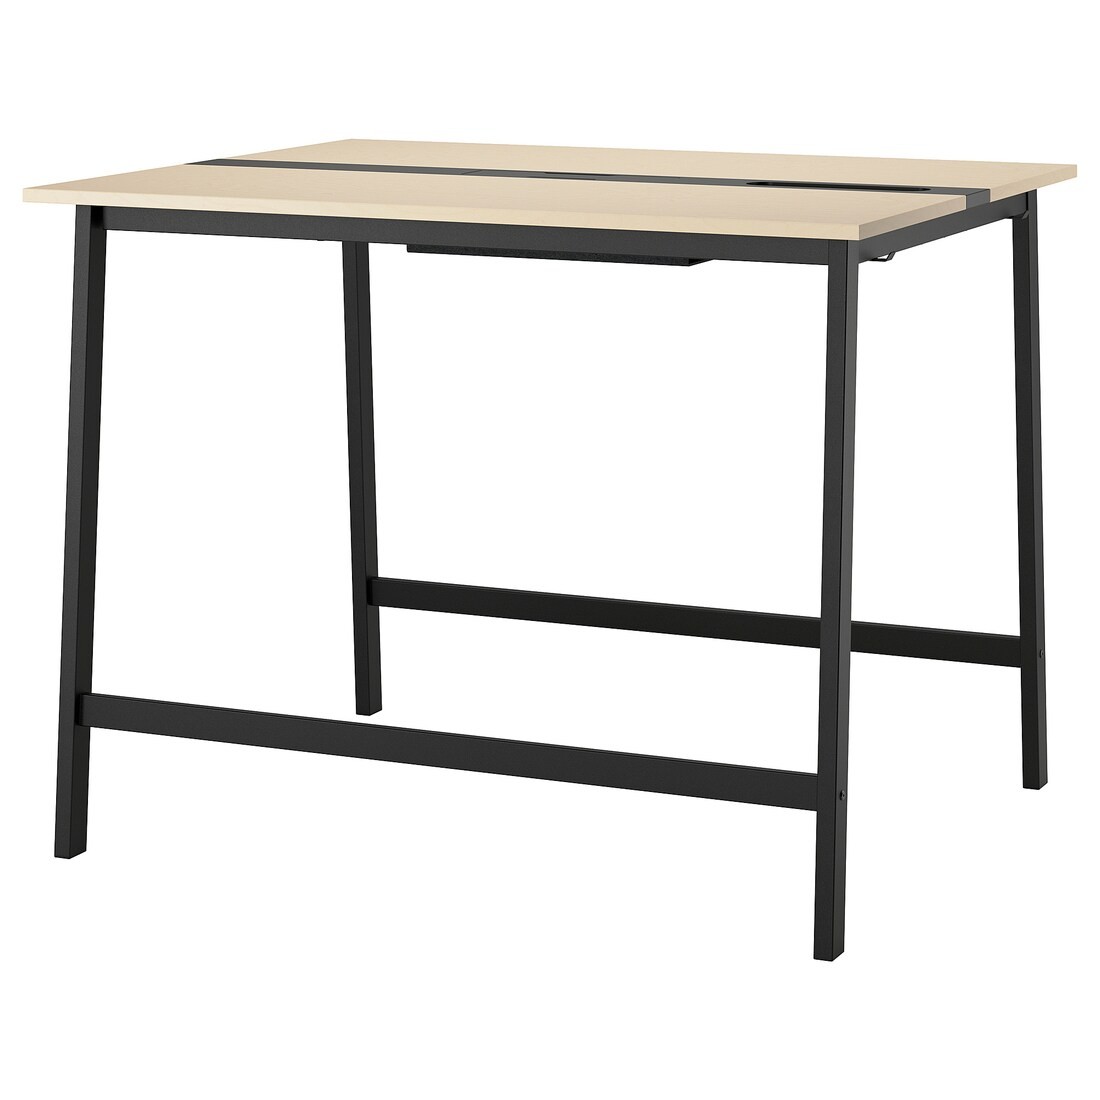 MITTZON конференц-стол, береза / черный шпон, 140x108x105 см